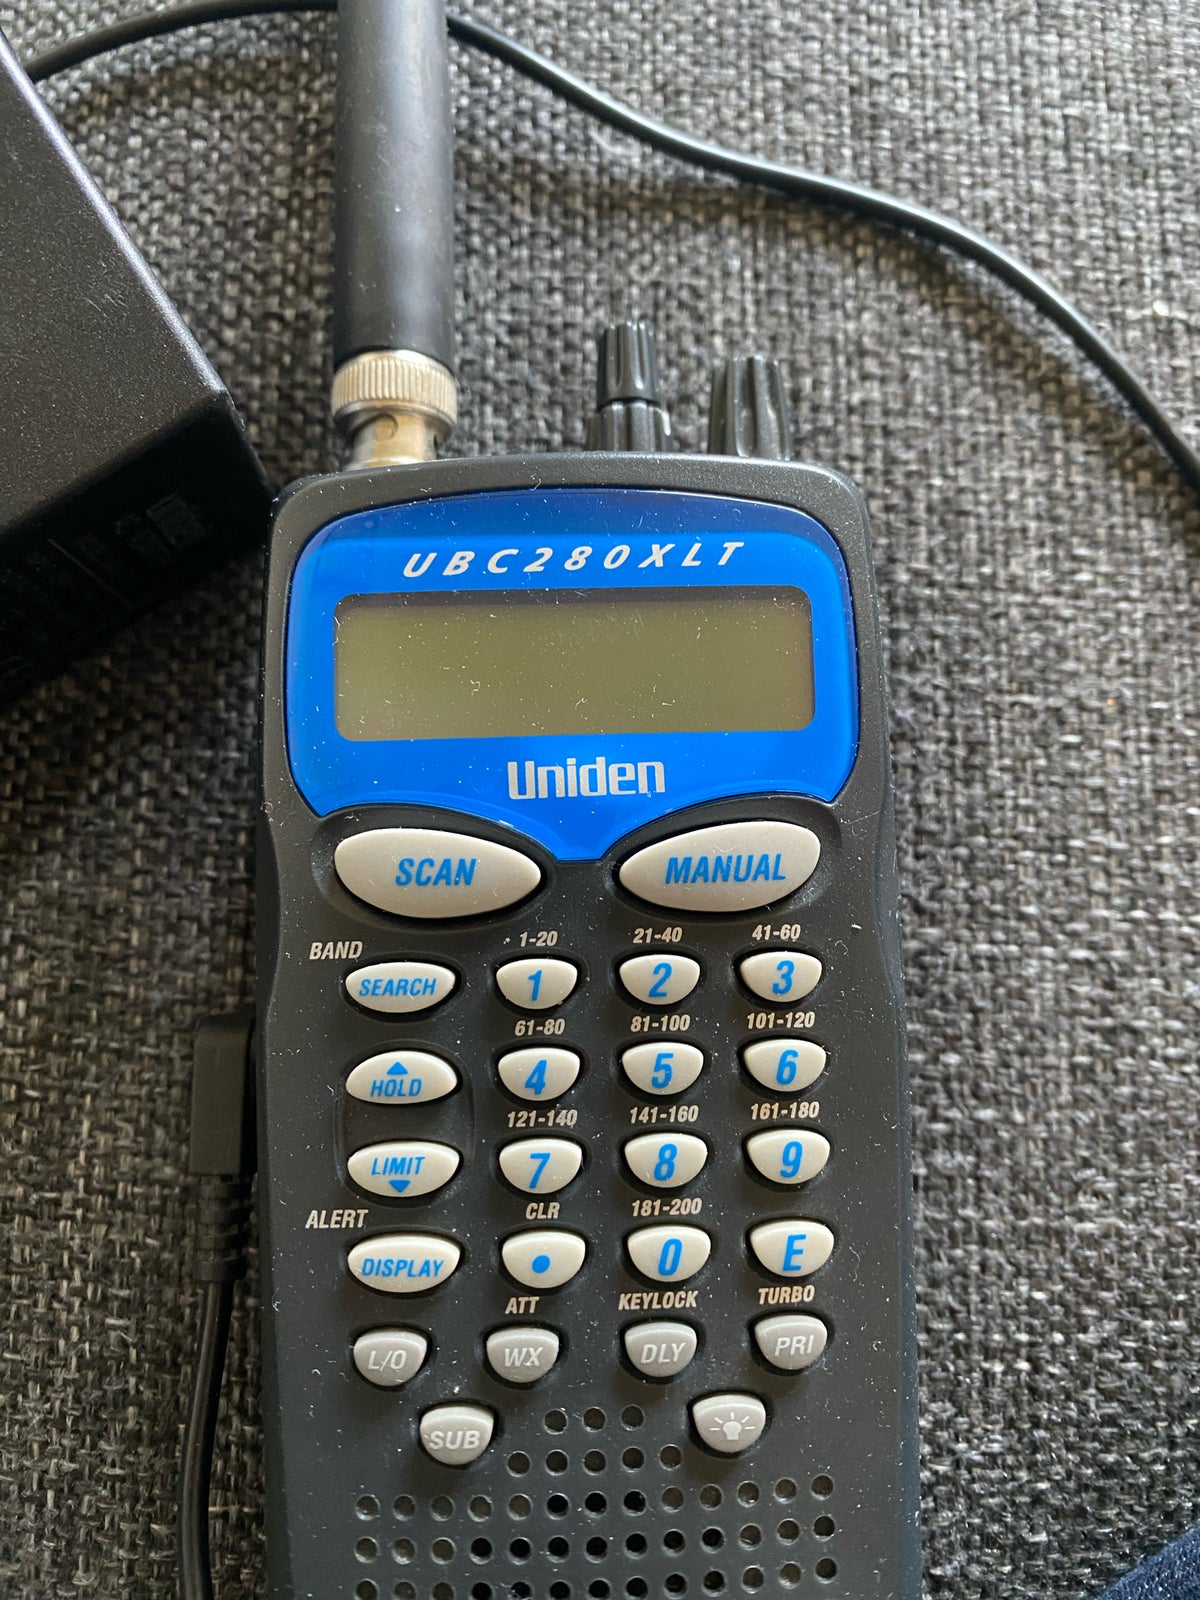 scaner, Uniden , UBC280xlt